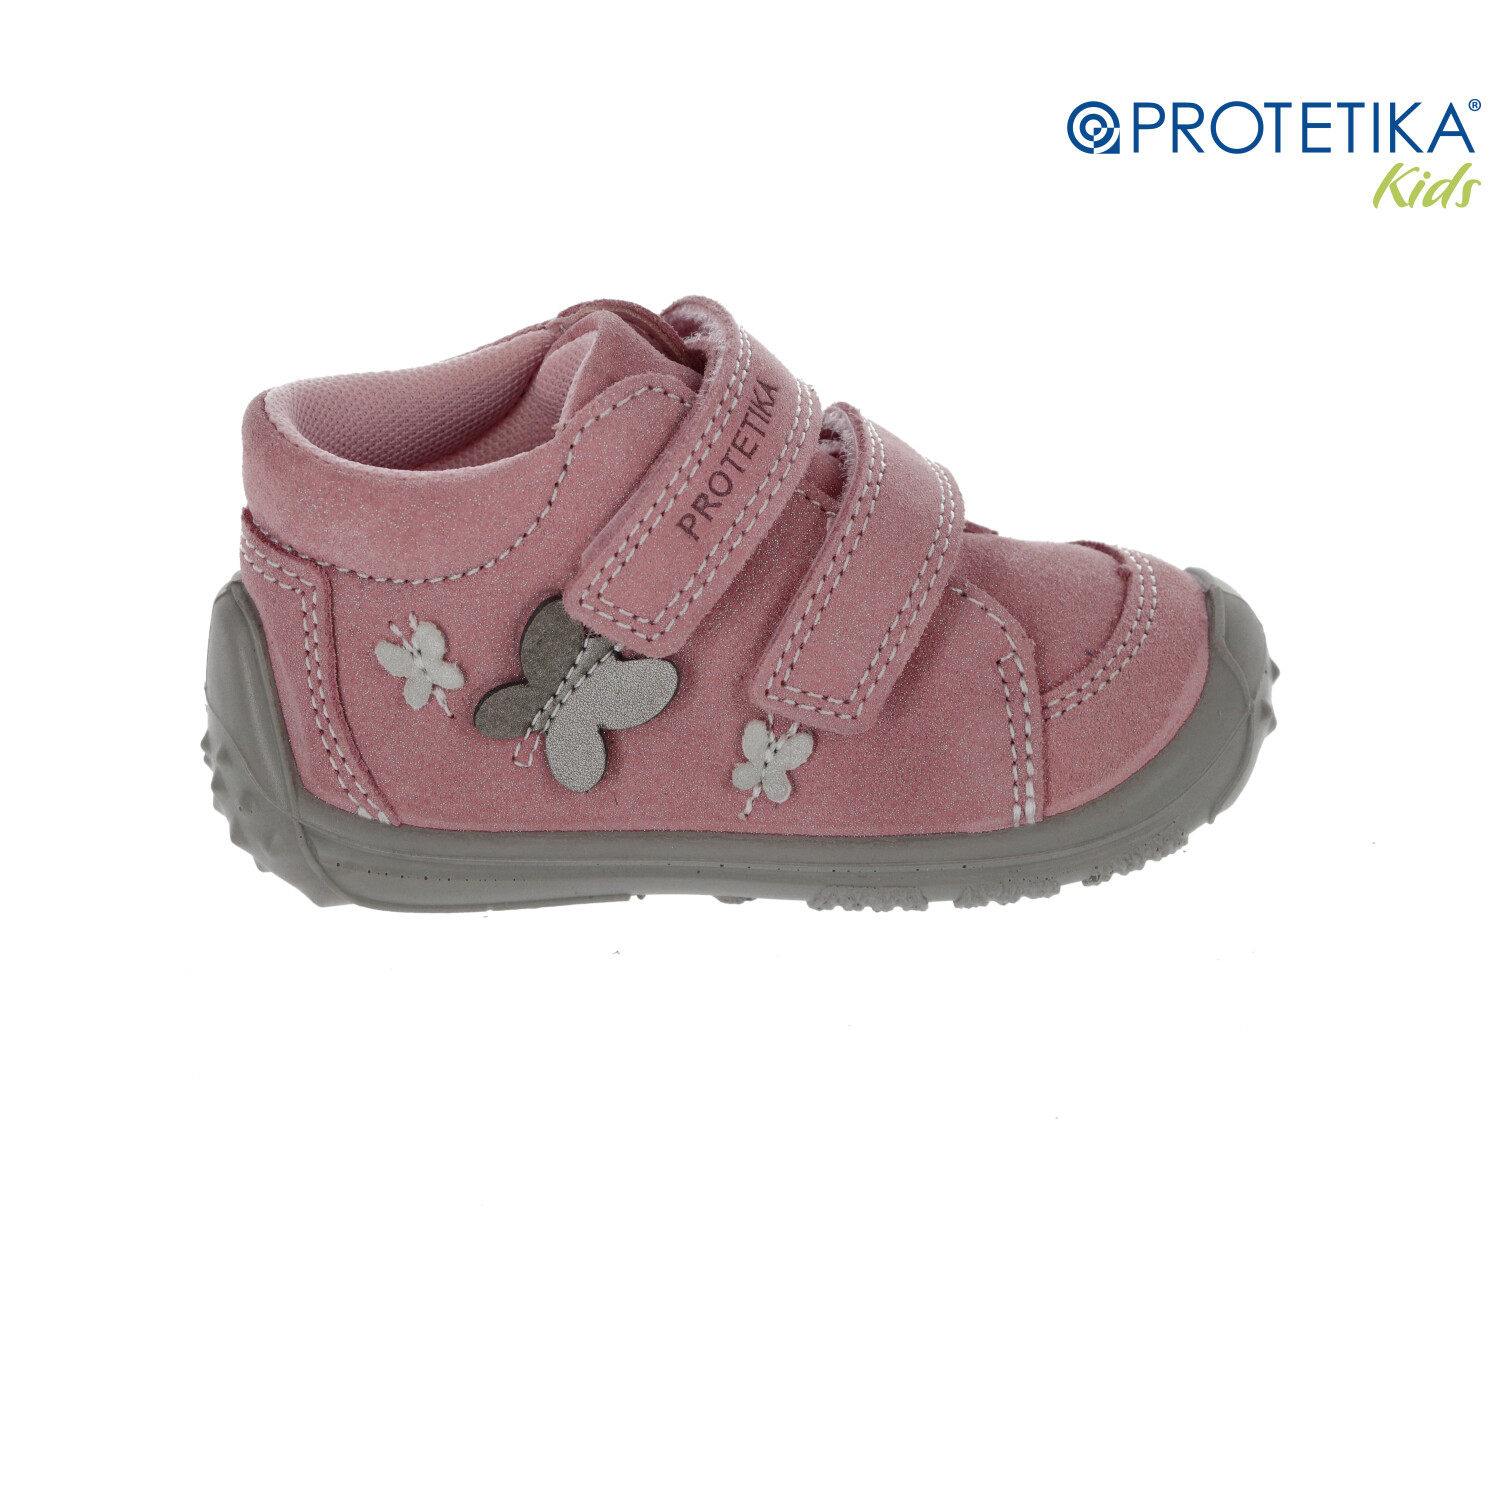 Protetika - topánky s membránou PRO-tex ADISON